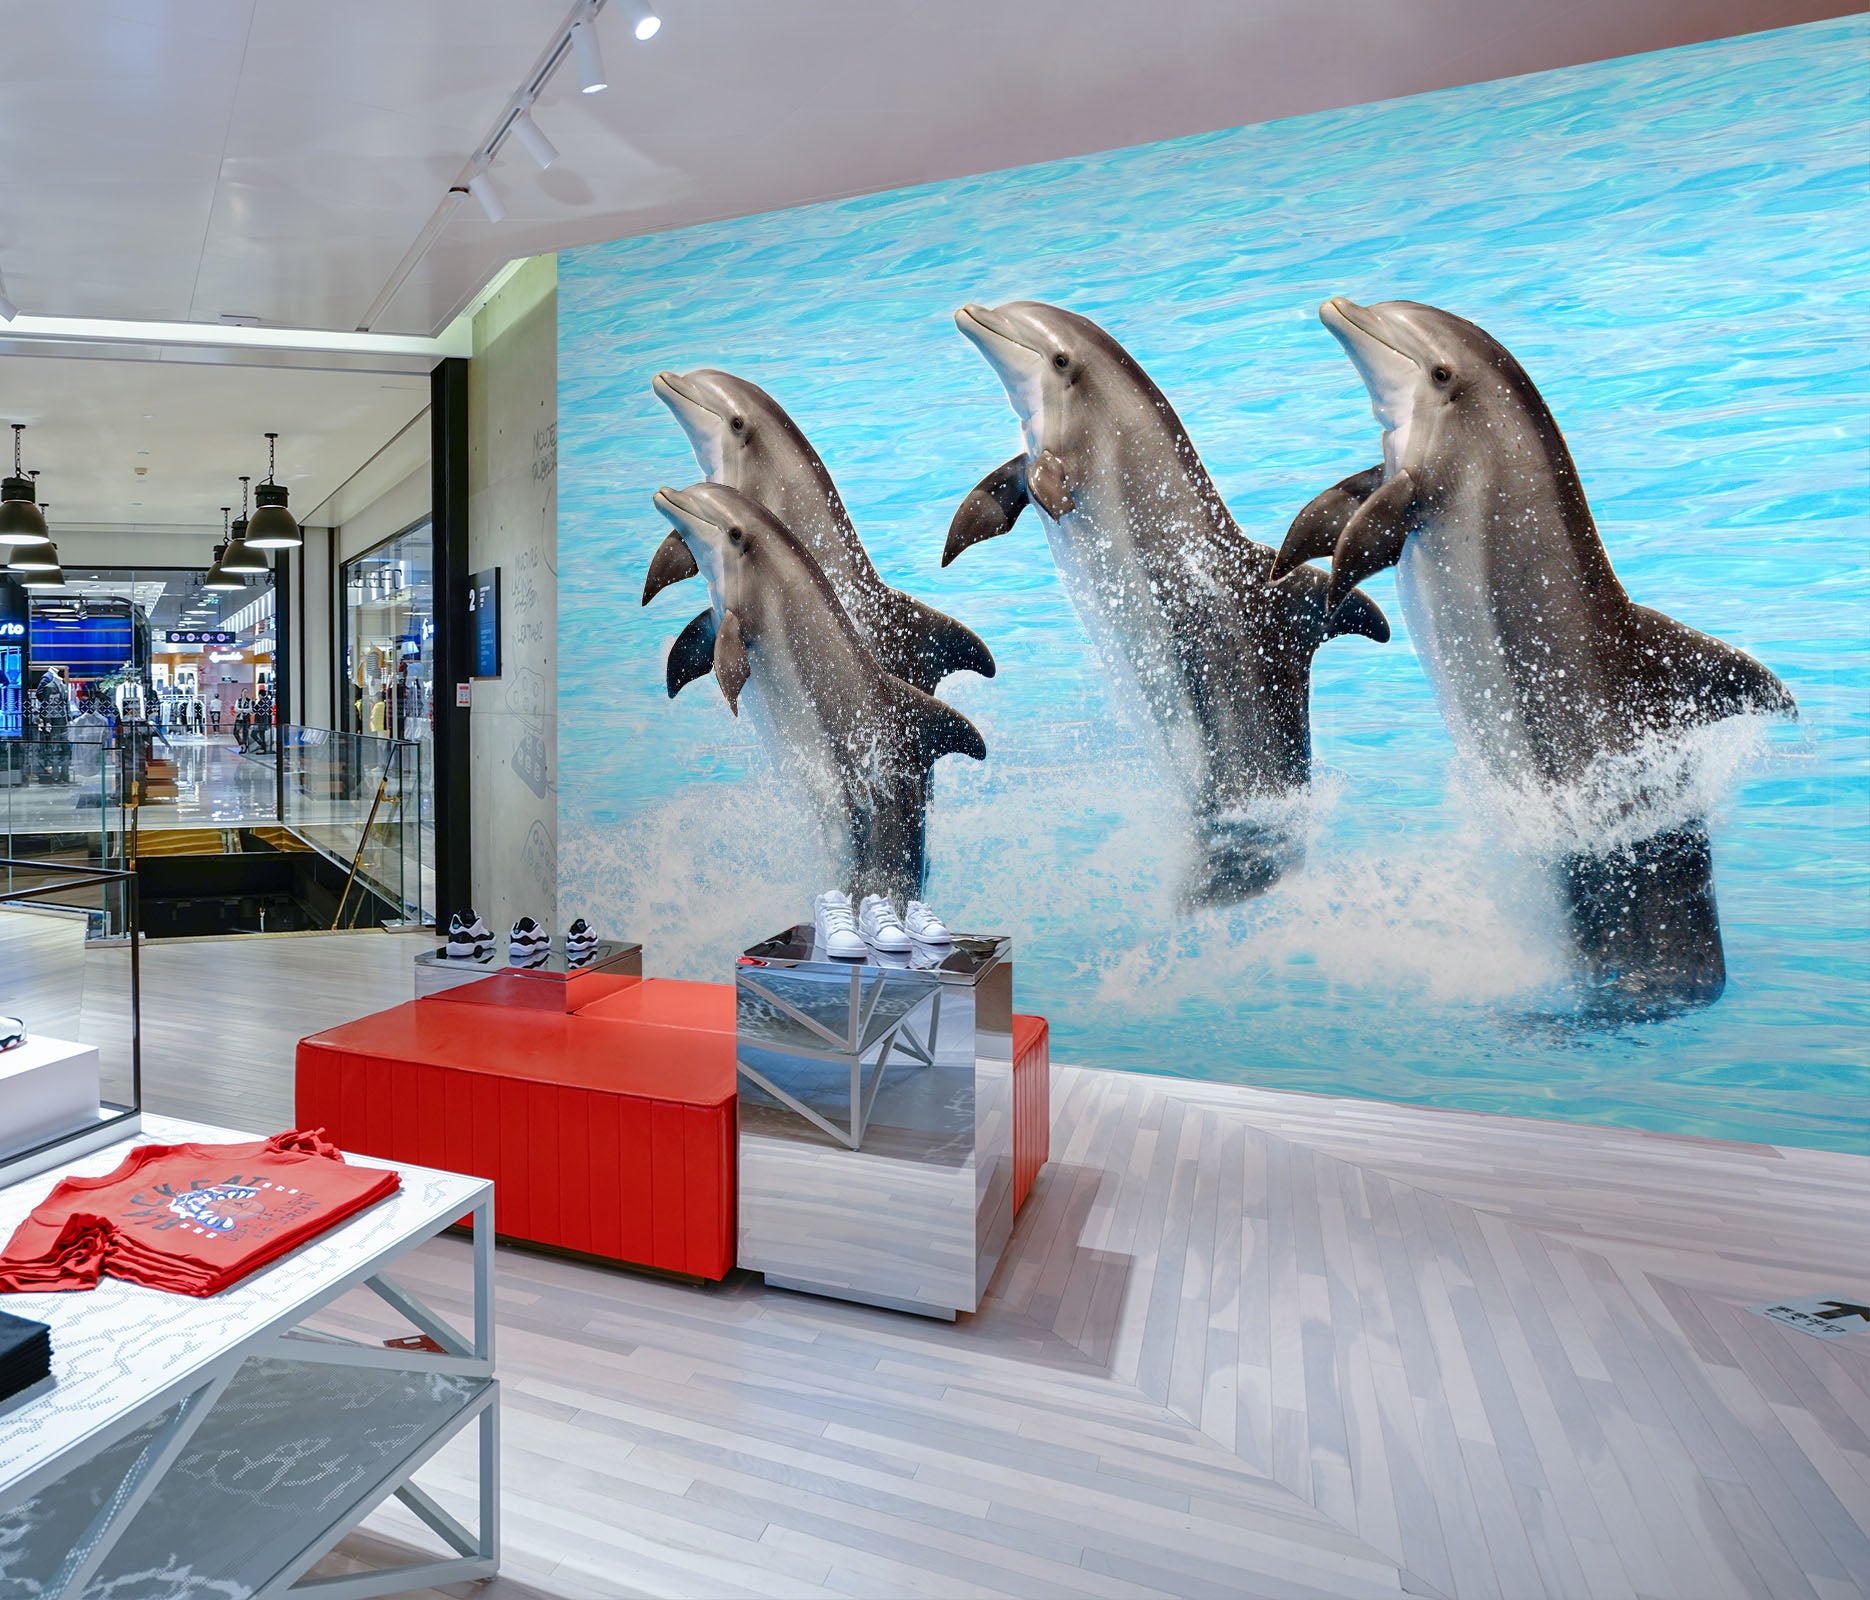 3D Dolphin Jumping 101 Wall Murals